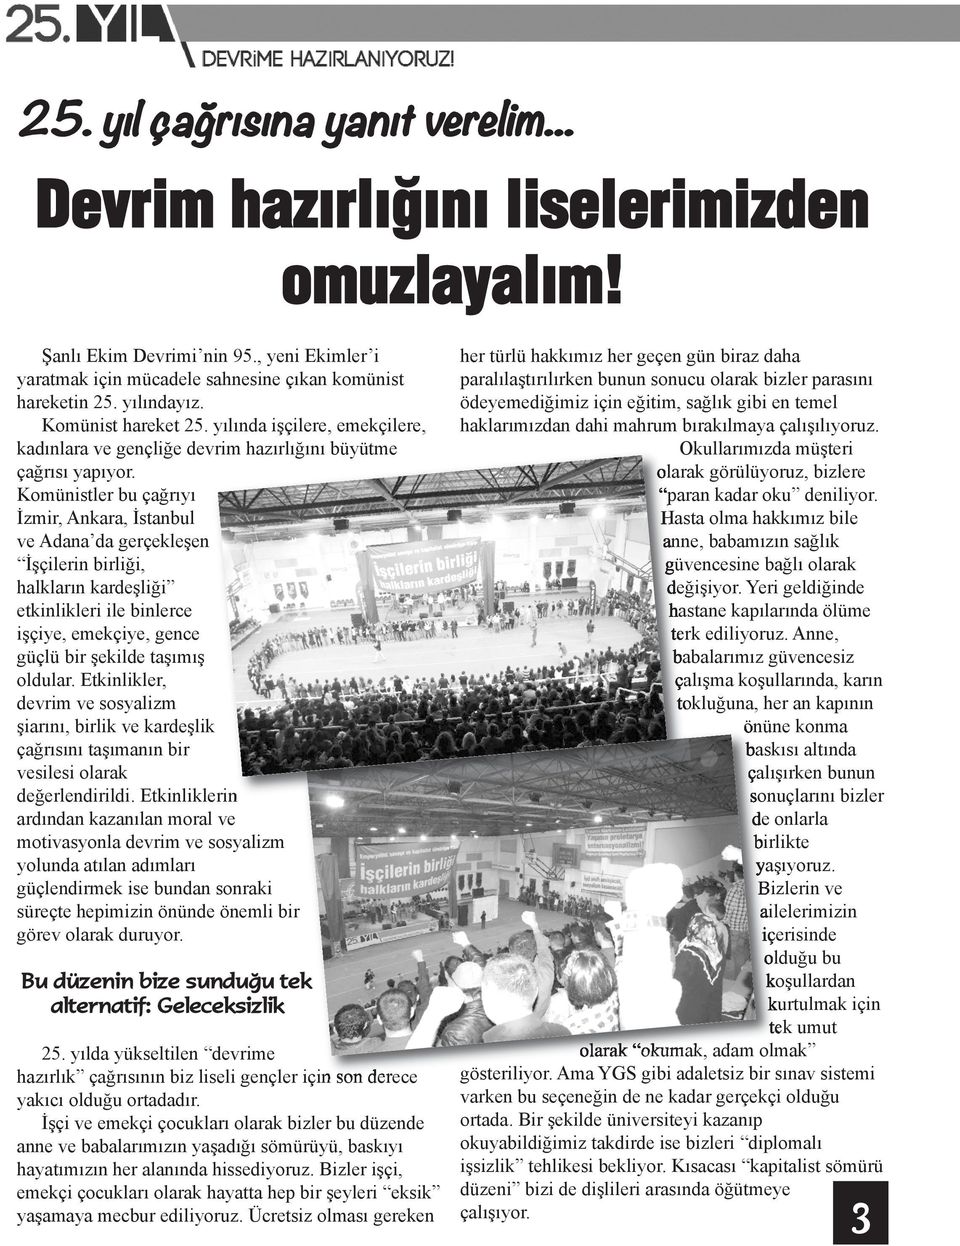 Komünistler bu çağrıyı İzmir, Ankara, İstanbul ve Adana da gerçekleşen İşçilerin birliği, halkların kardeşliği etkinlikleri ile binlerce işçiye, emekçiye, gence güçlü bir şekilde taşımış oldular.